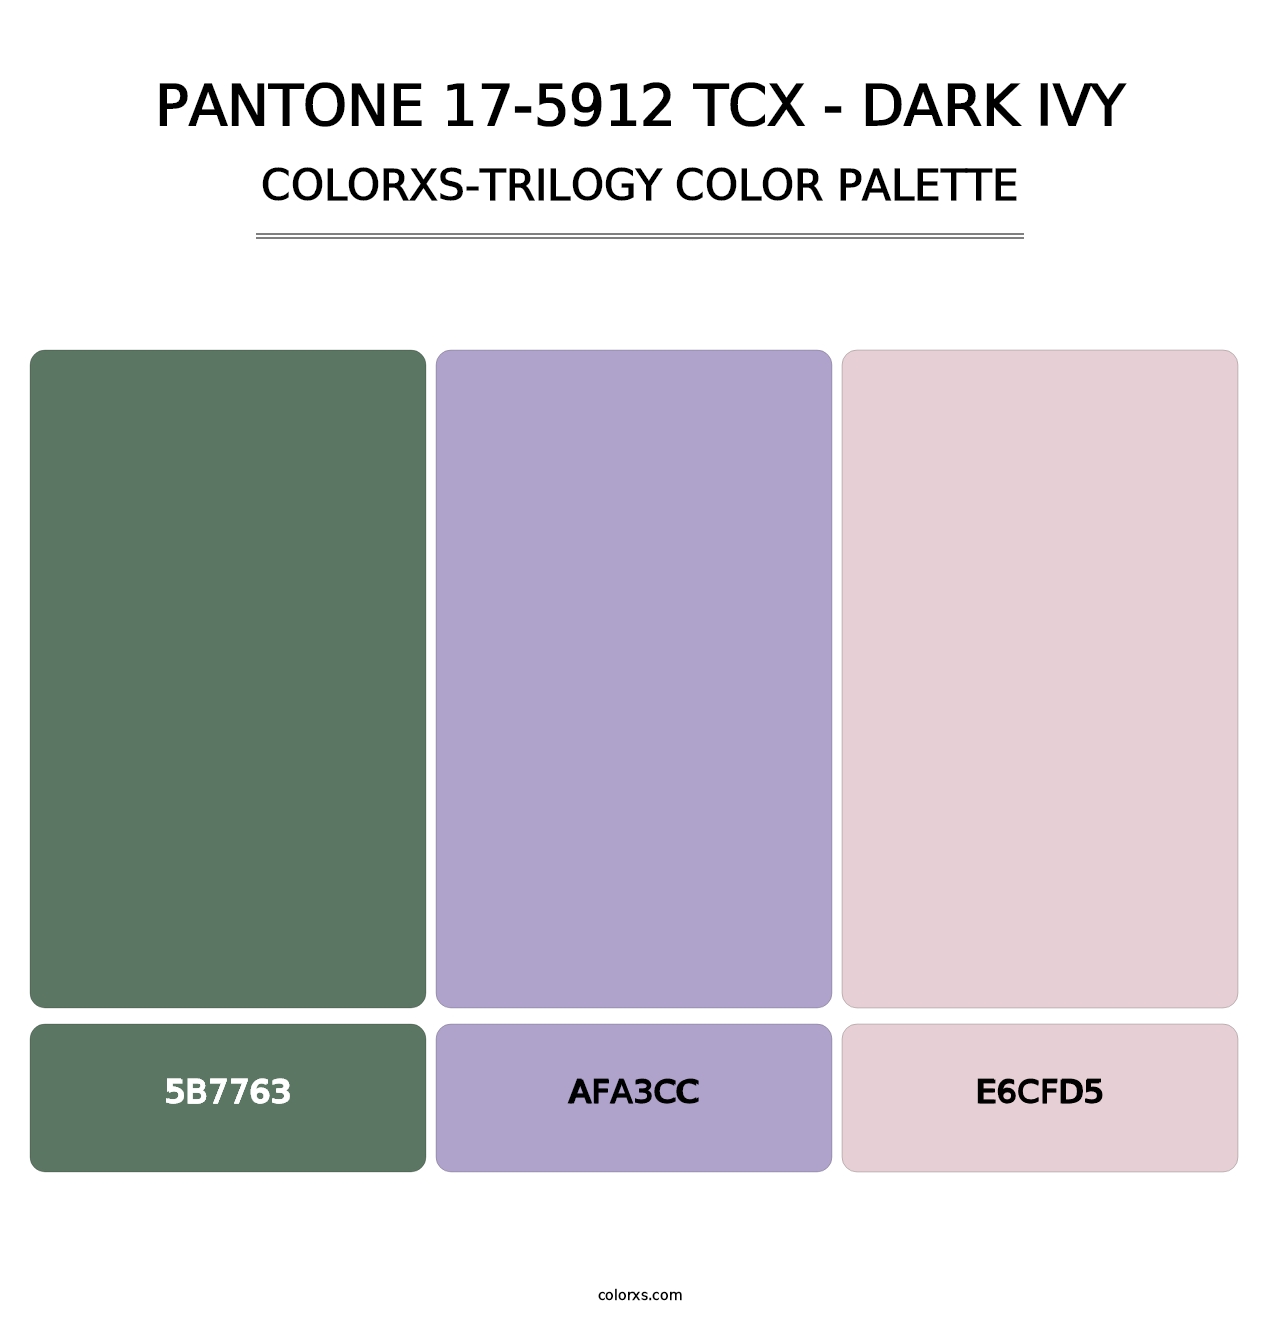 PANTONE 17-5912 TCX - Dark Ivy - Colorxs Trilogy Palette